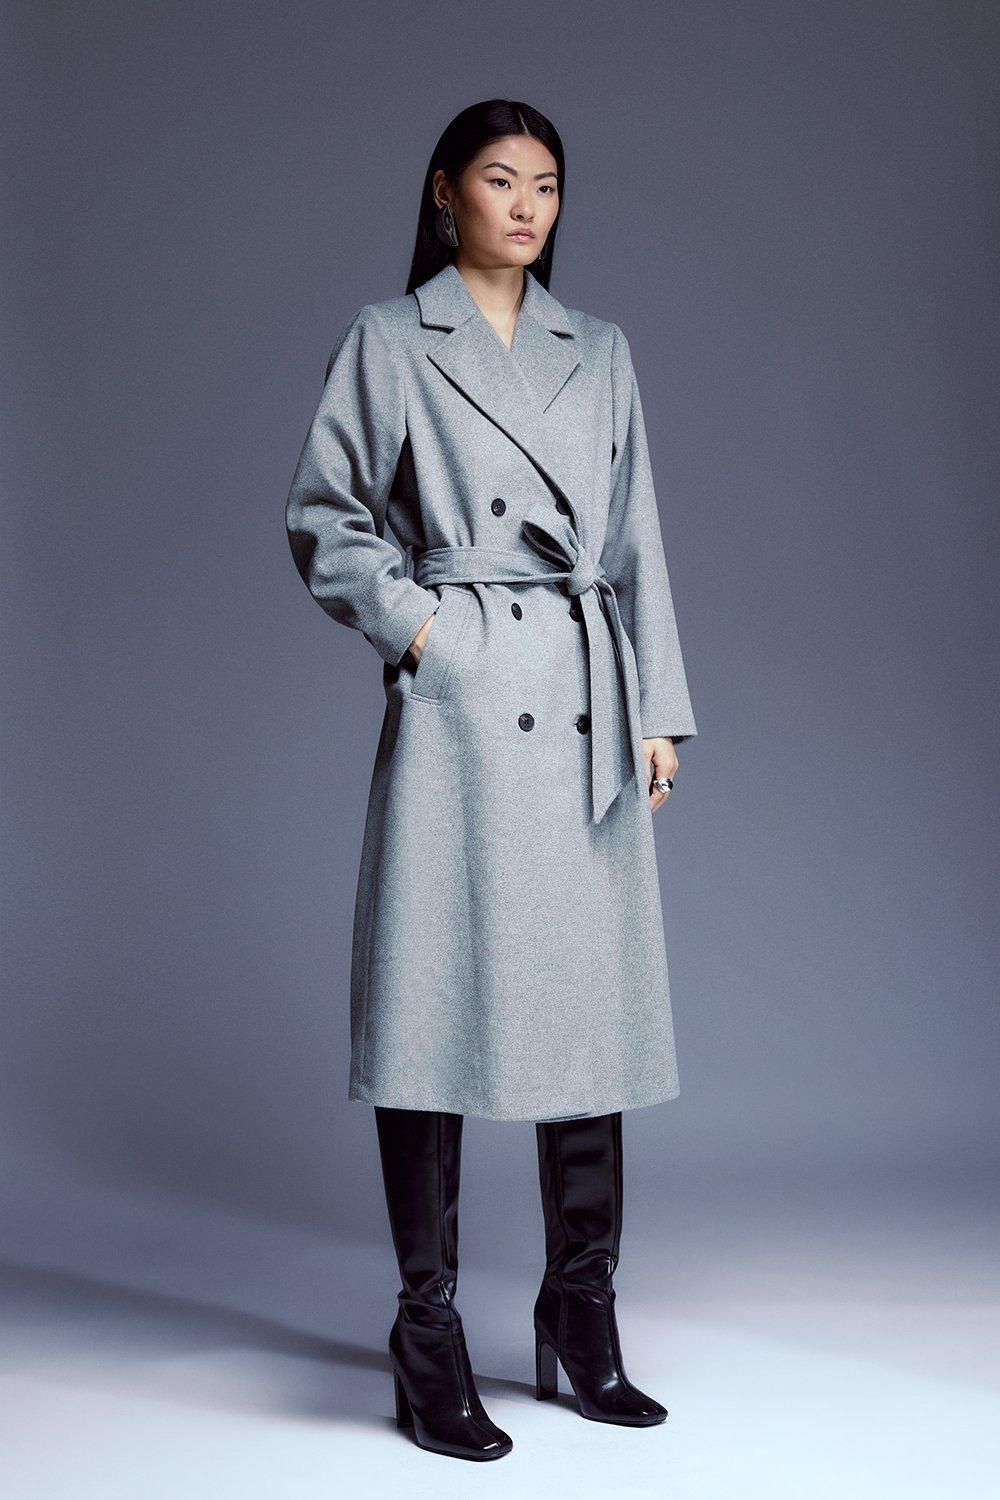 Italian Luxurious Textured Wool Belted Coat | Karen Millen UK + IE + DE + NL